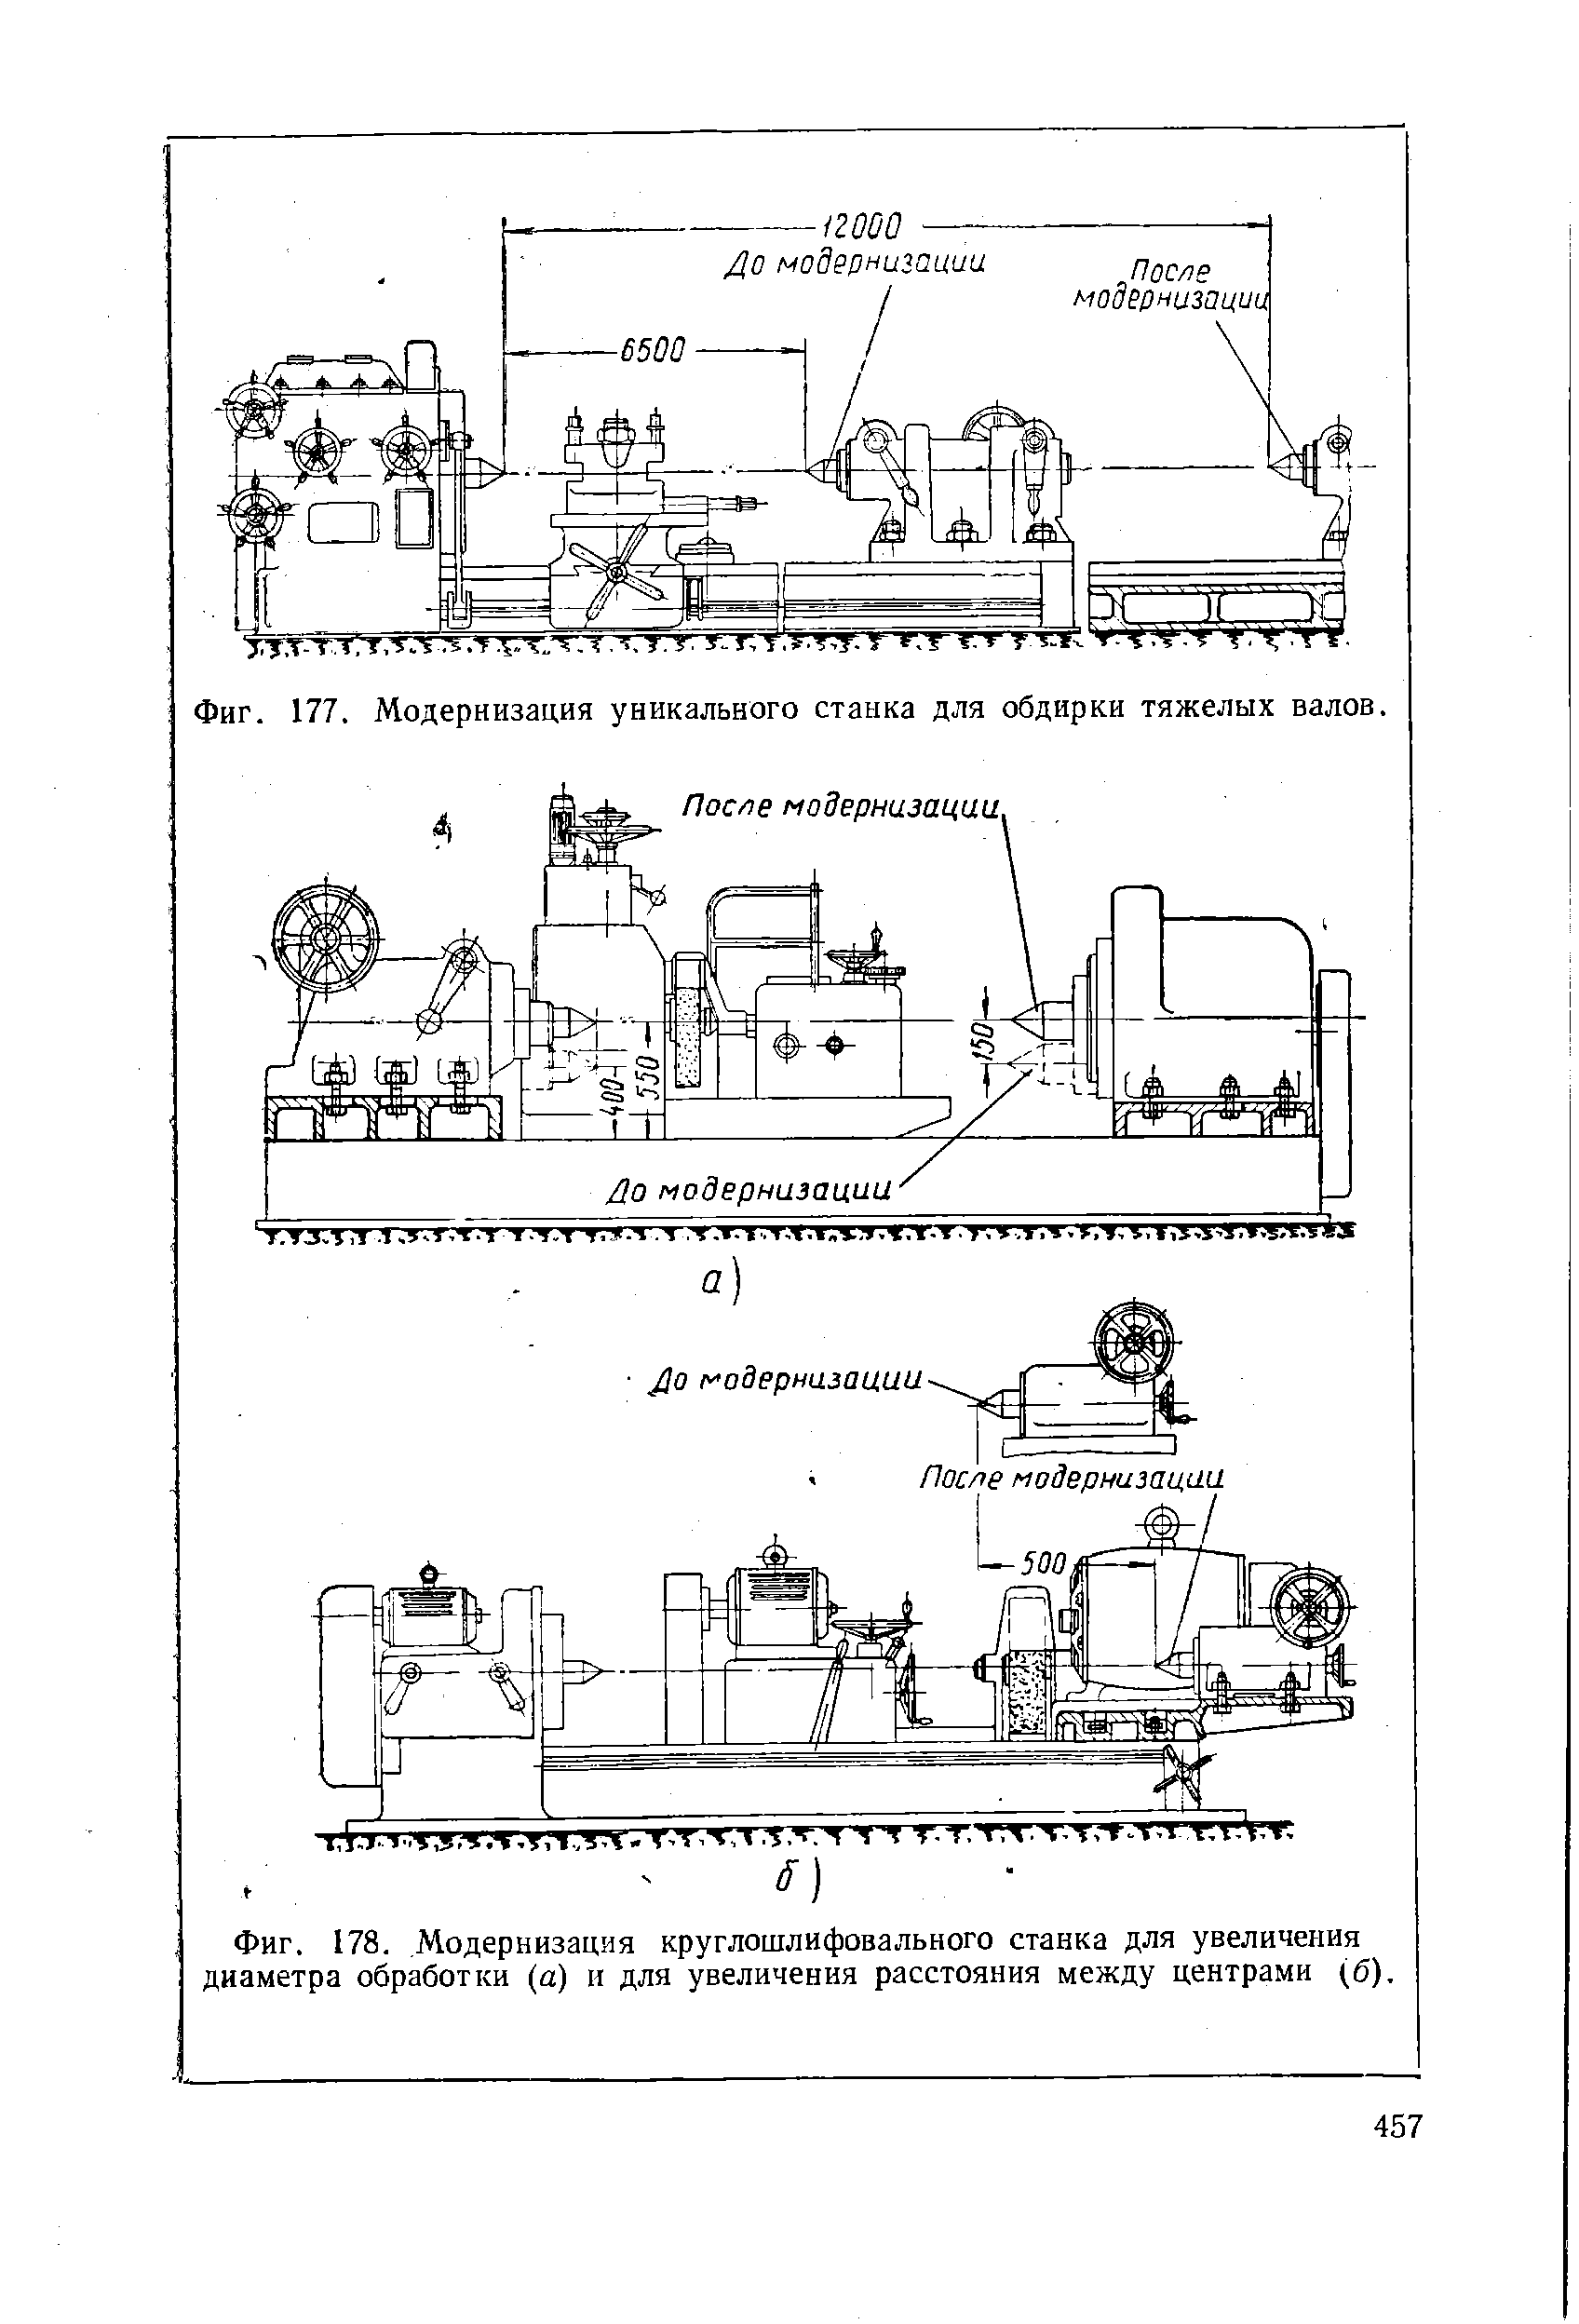 Фиг. 177. Модернизация уникального станка для обдирки тяжелых валов.
